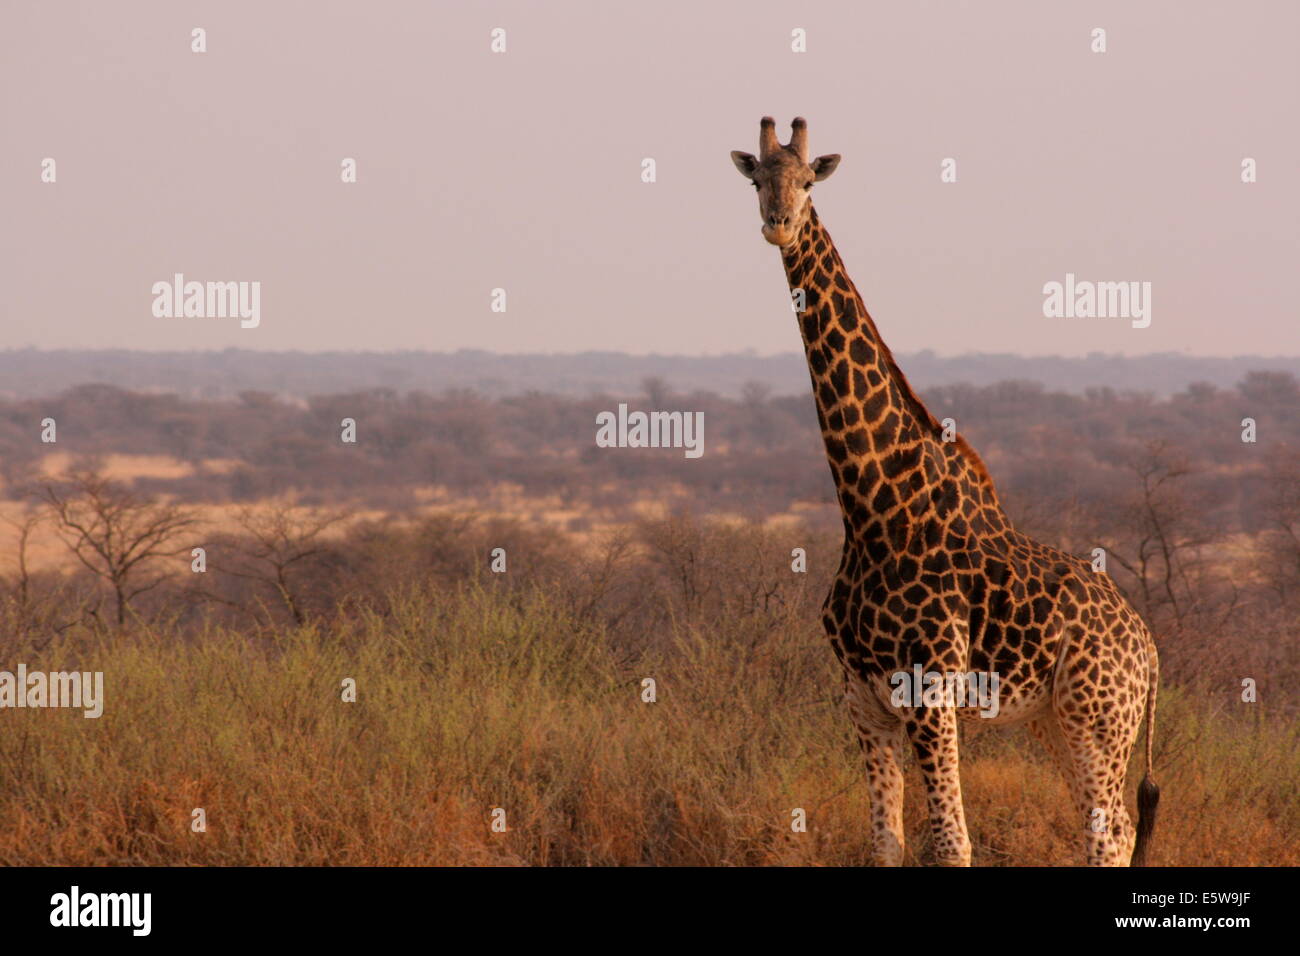 Giraffe standing tall over the bush in Botswana. Stock Photo